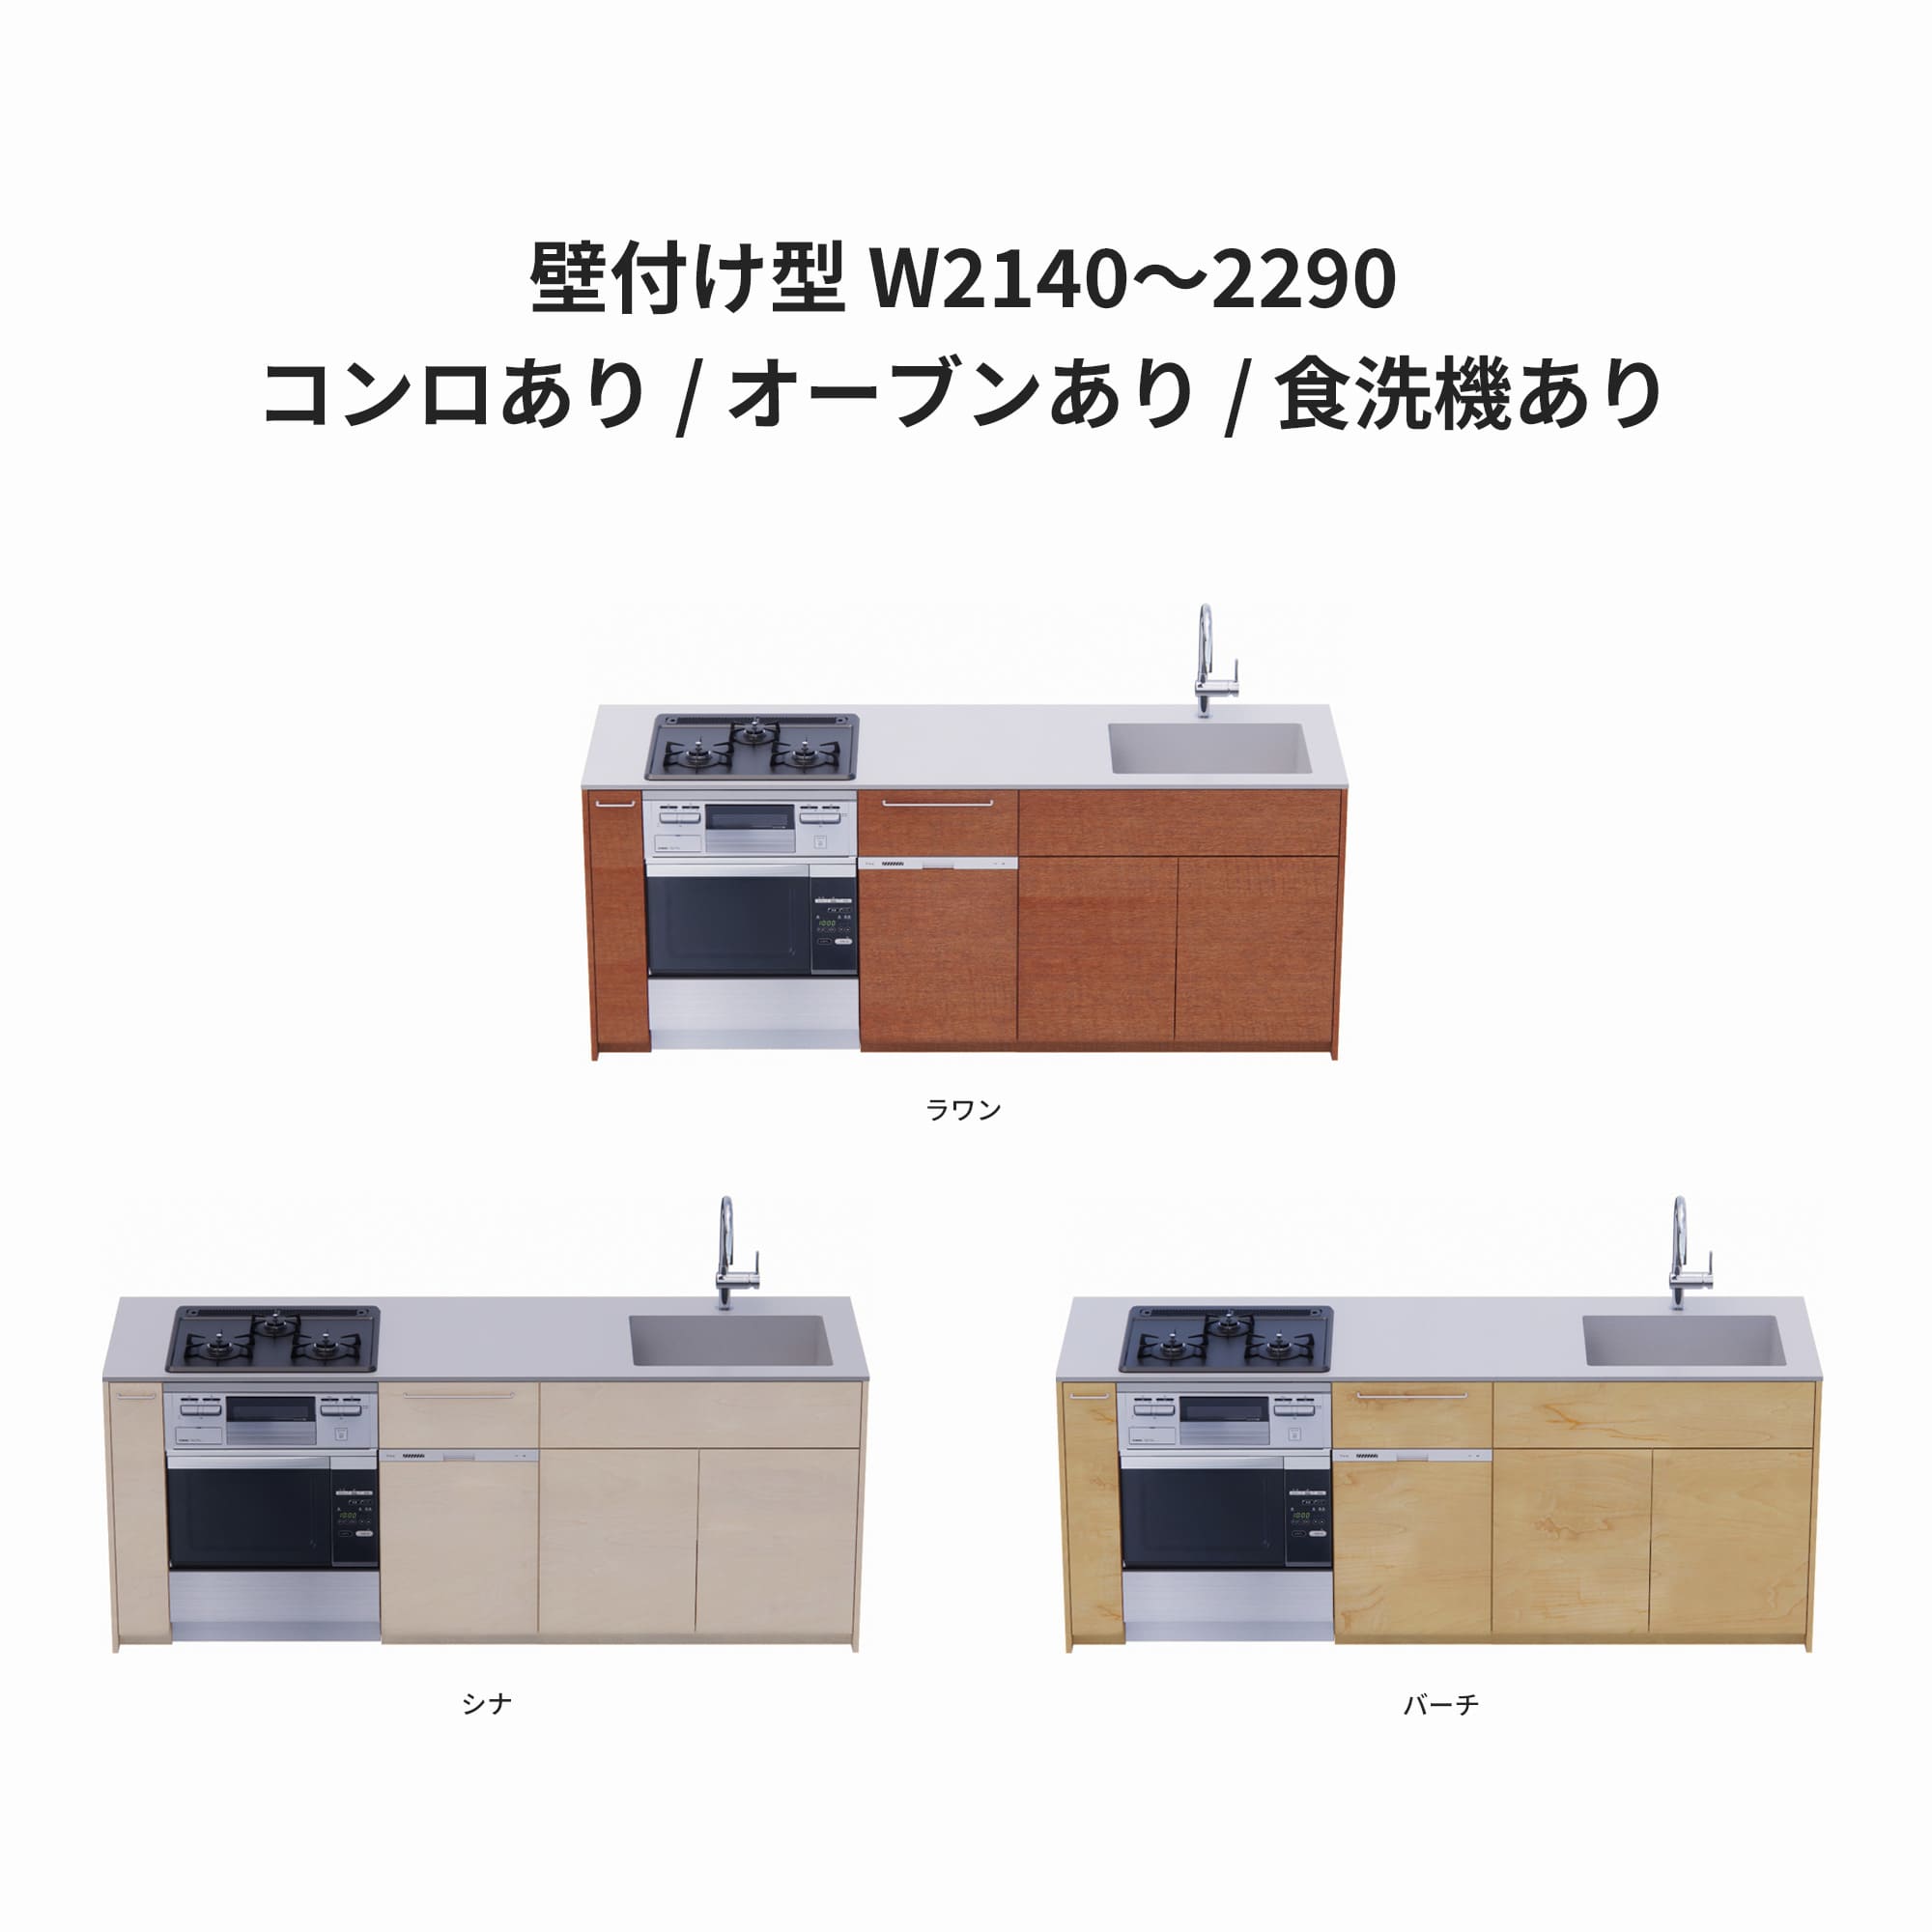 木製システムキッチン 壁付け型 W2140～2290・コンロあり / オーブンあり / 食洗機あり KB-KC022-22-G183 ラワン・シナ・バーチが選択できます